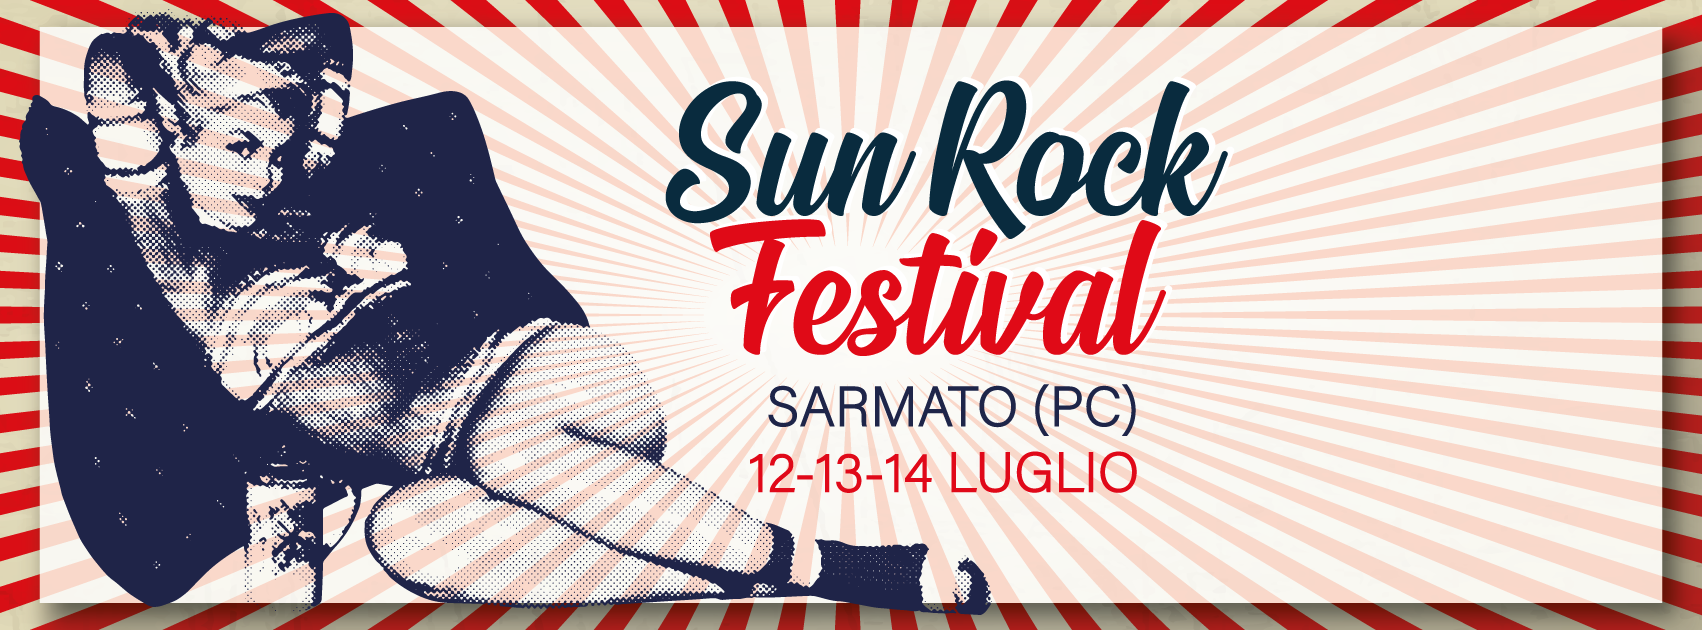 Sun Rock Festival Sarmato